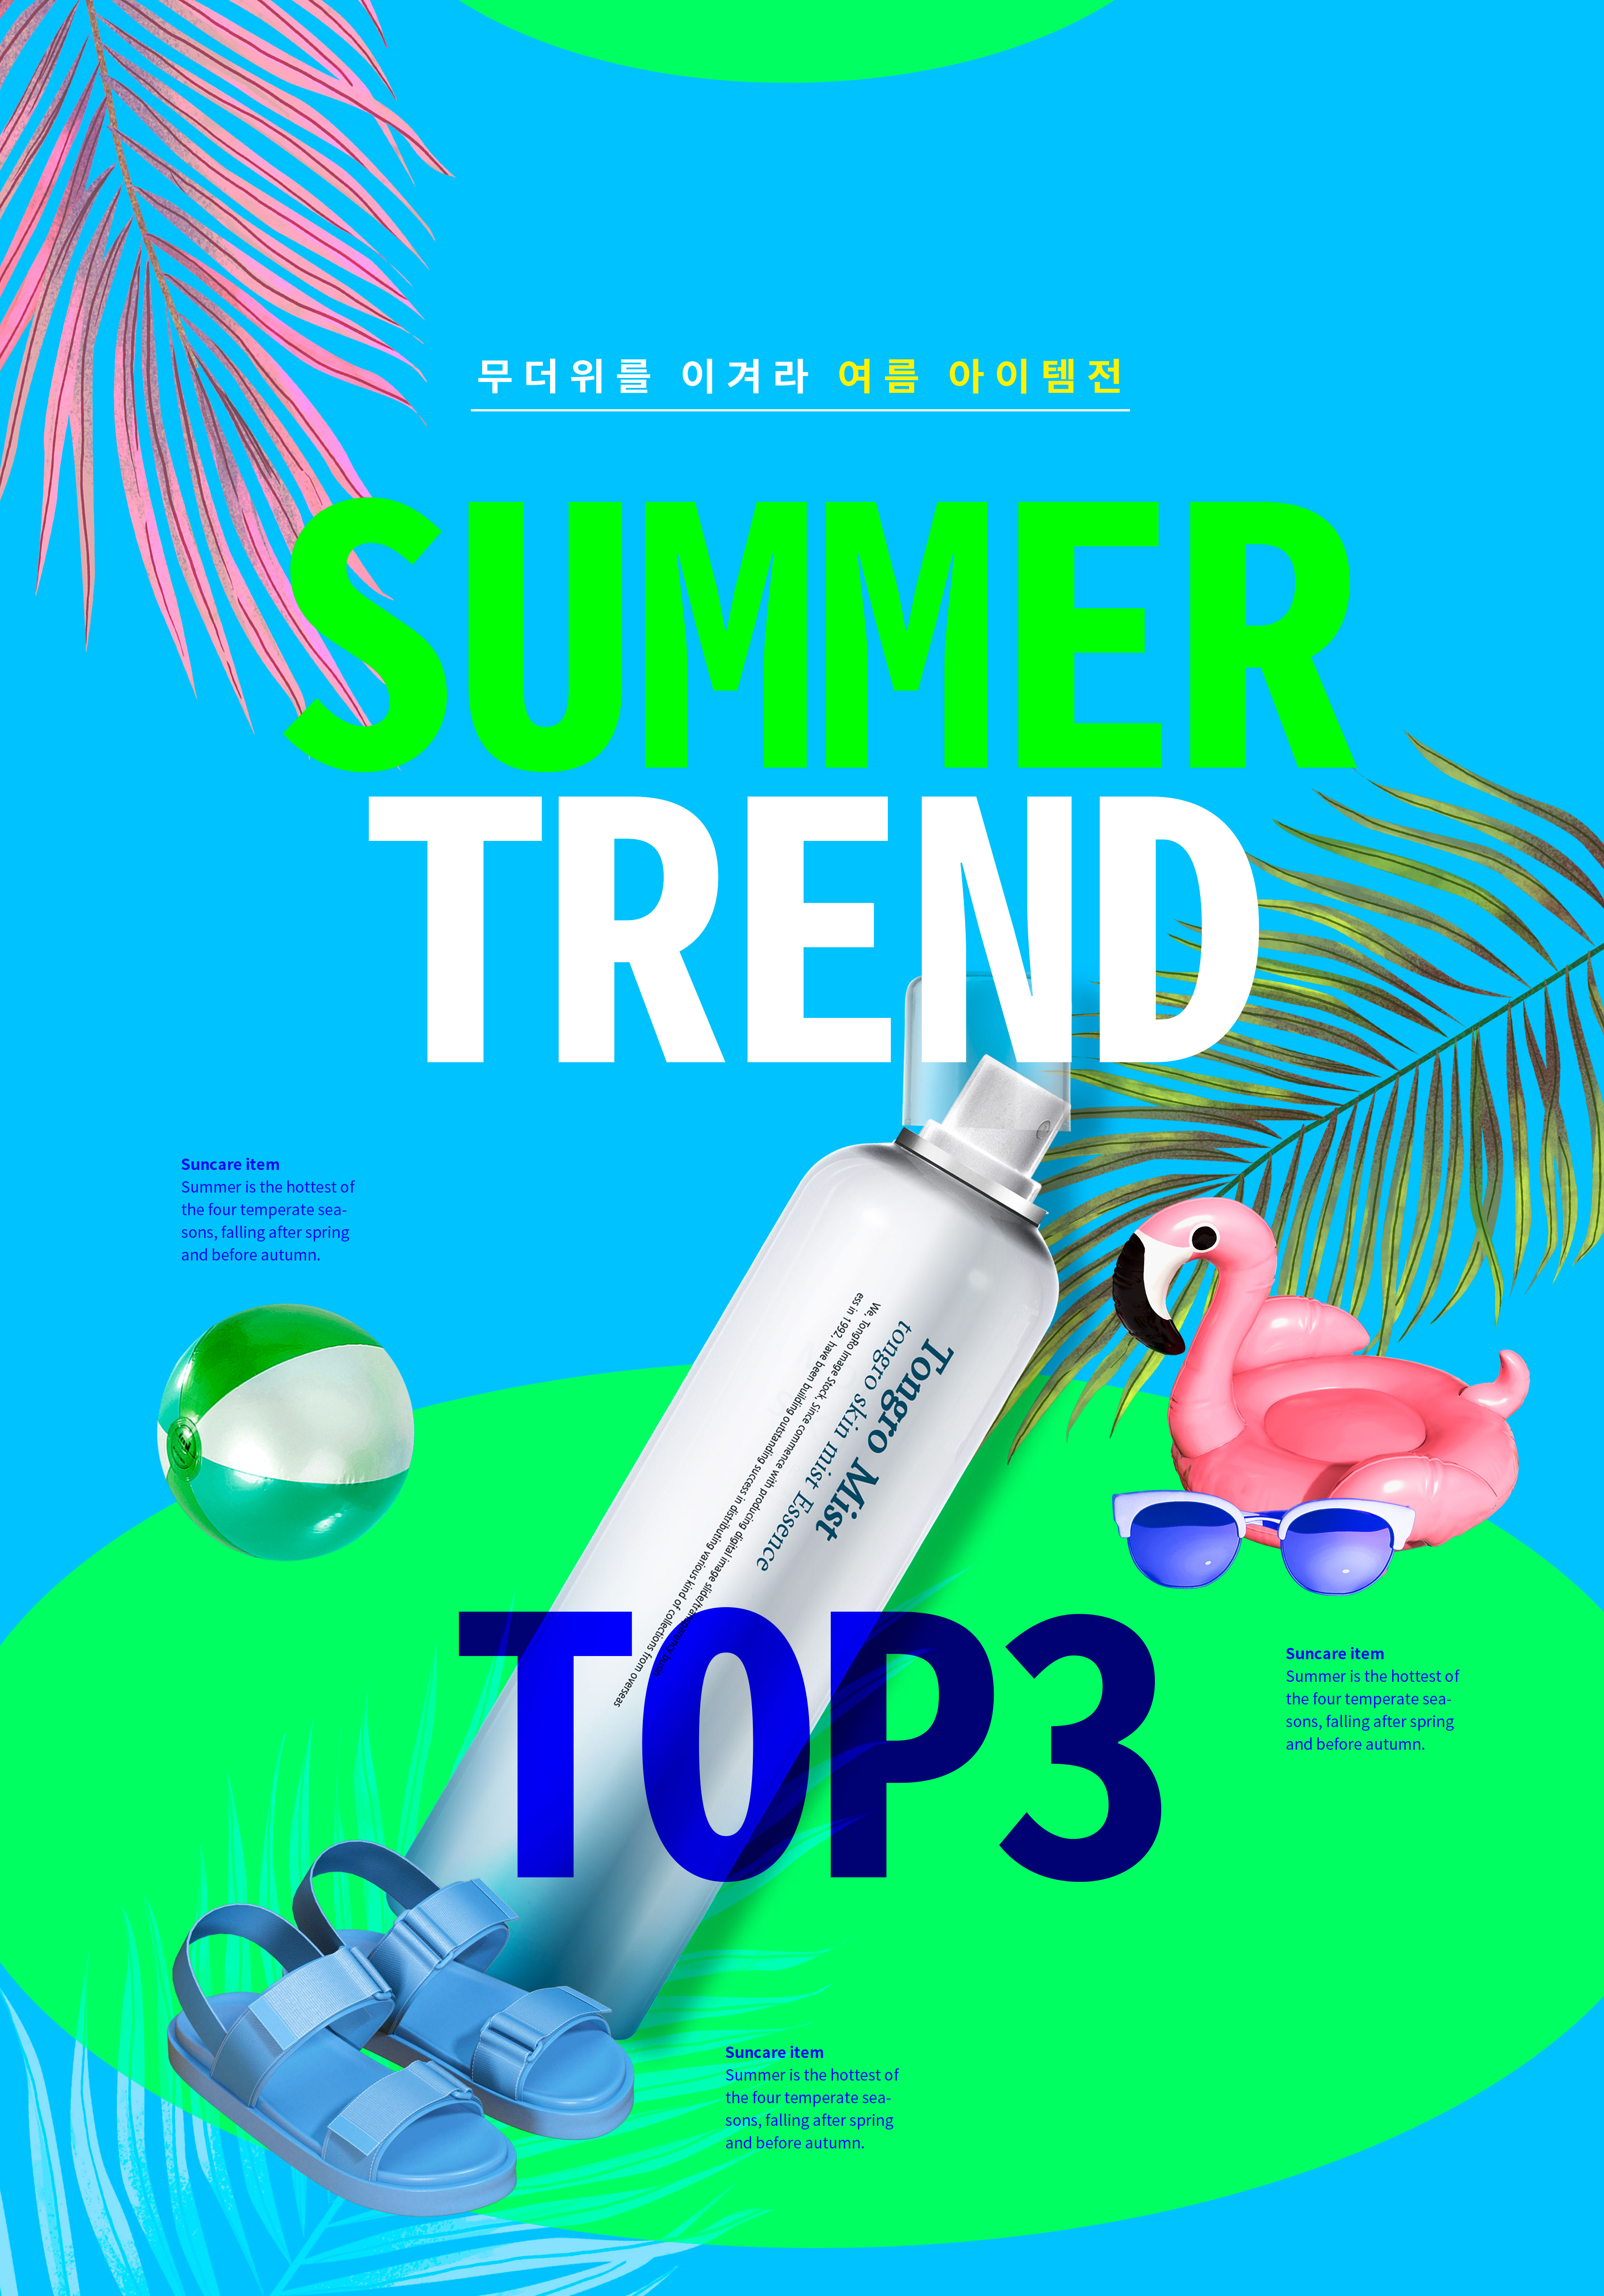 夏季防晒补水护肤化妆品广告海报模板套装[PSD]插图(1)